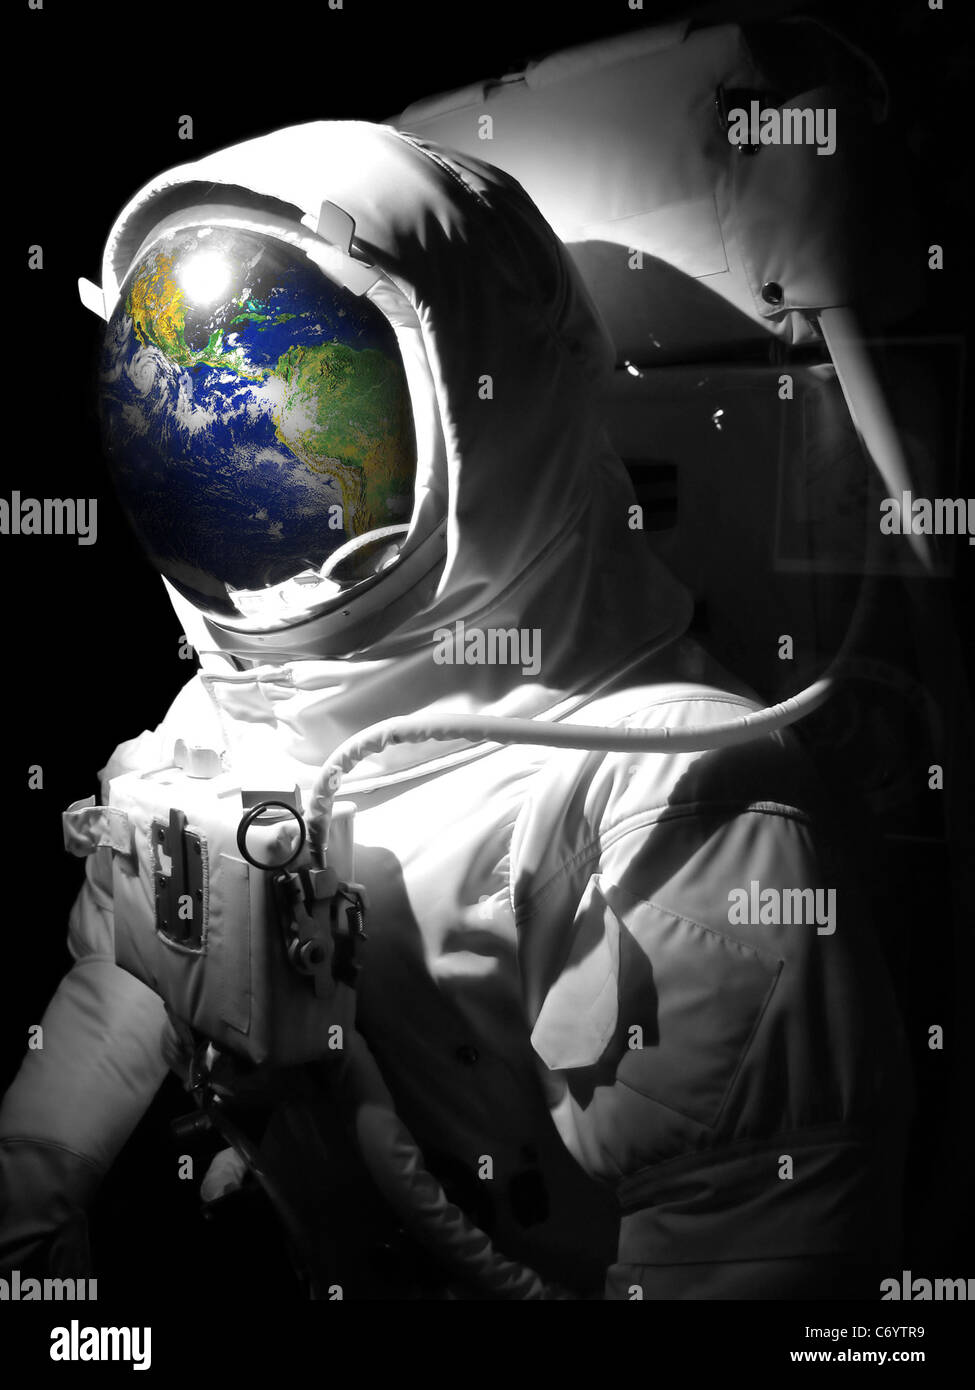 Spazio astronauta uomo vestito con un riflesso della terra nel casco. Messa a terra foto per gentile concessione della NASA. Foto Stock